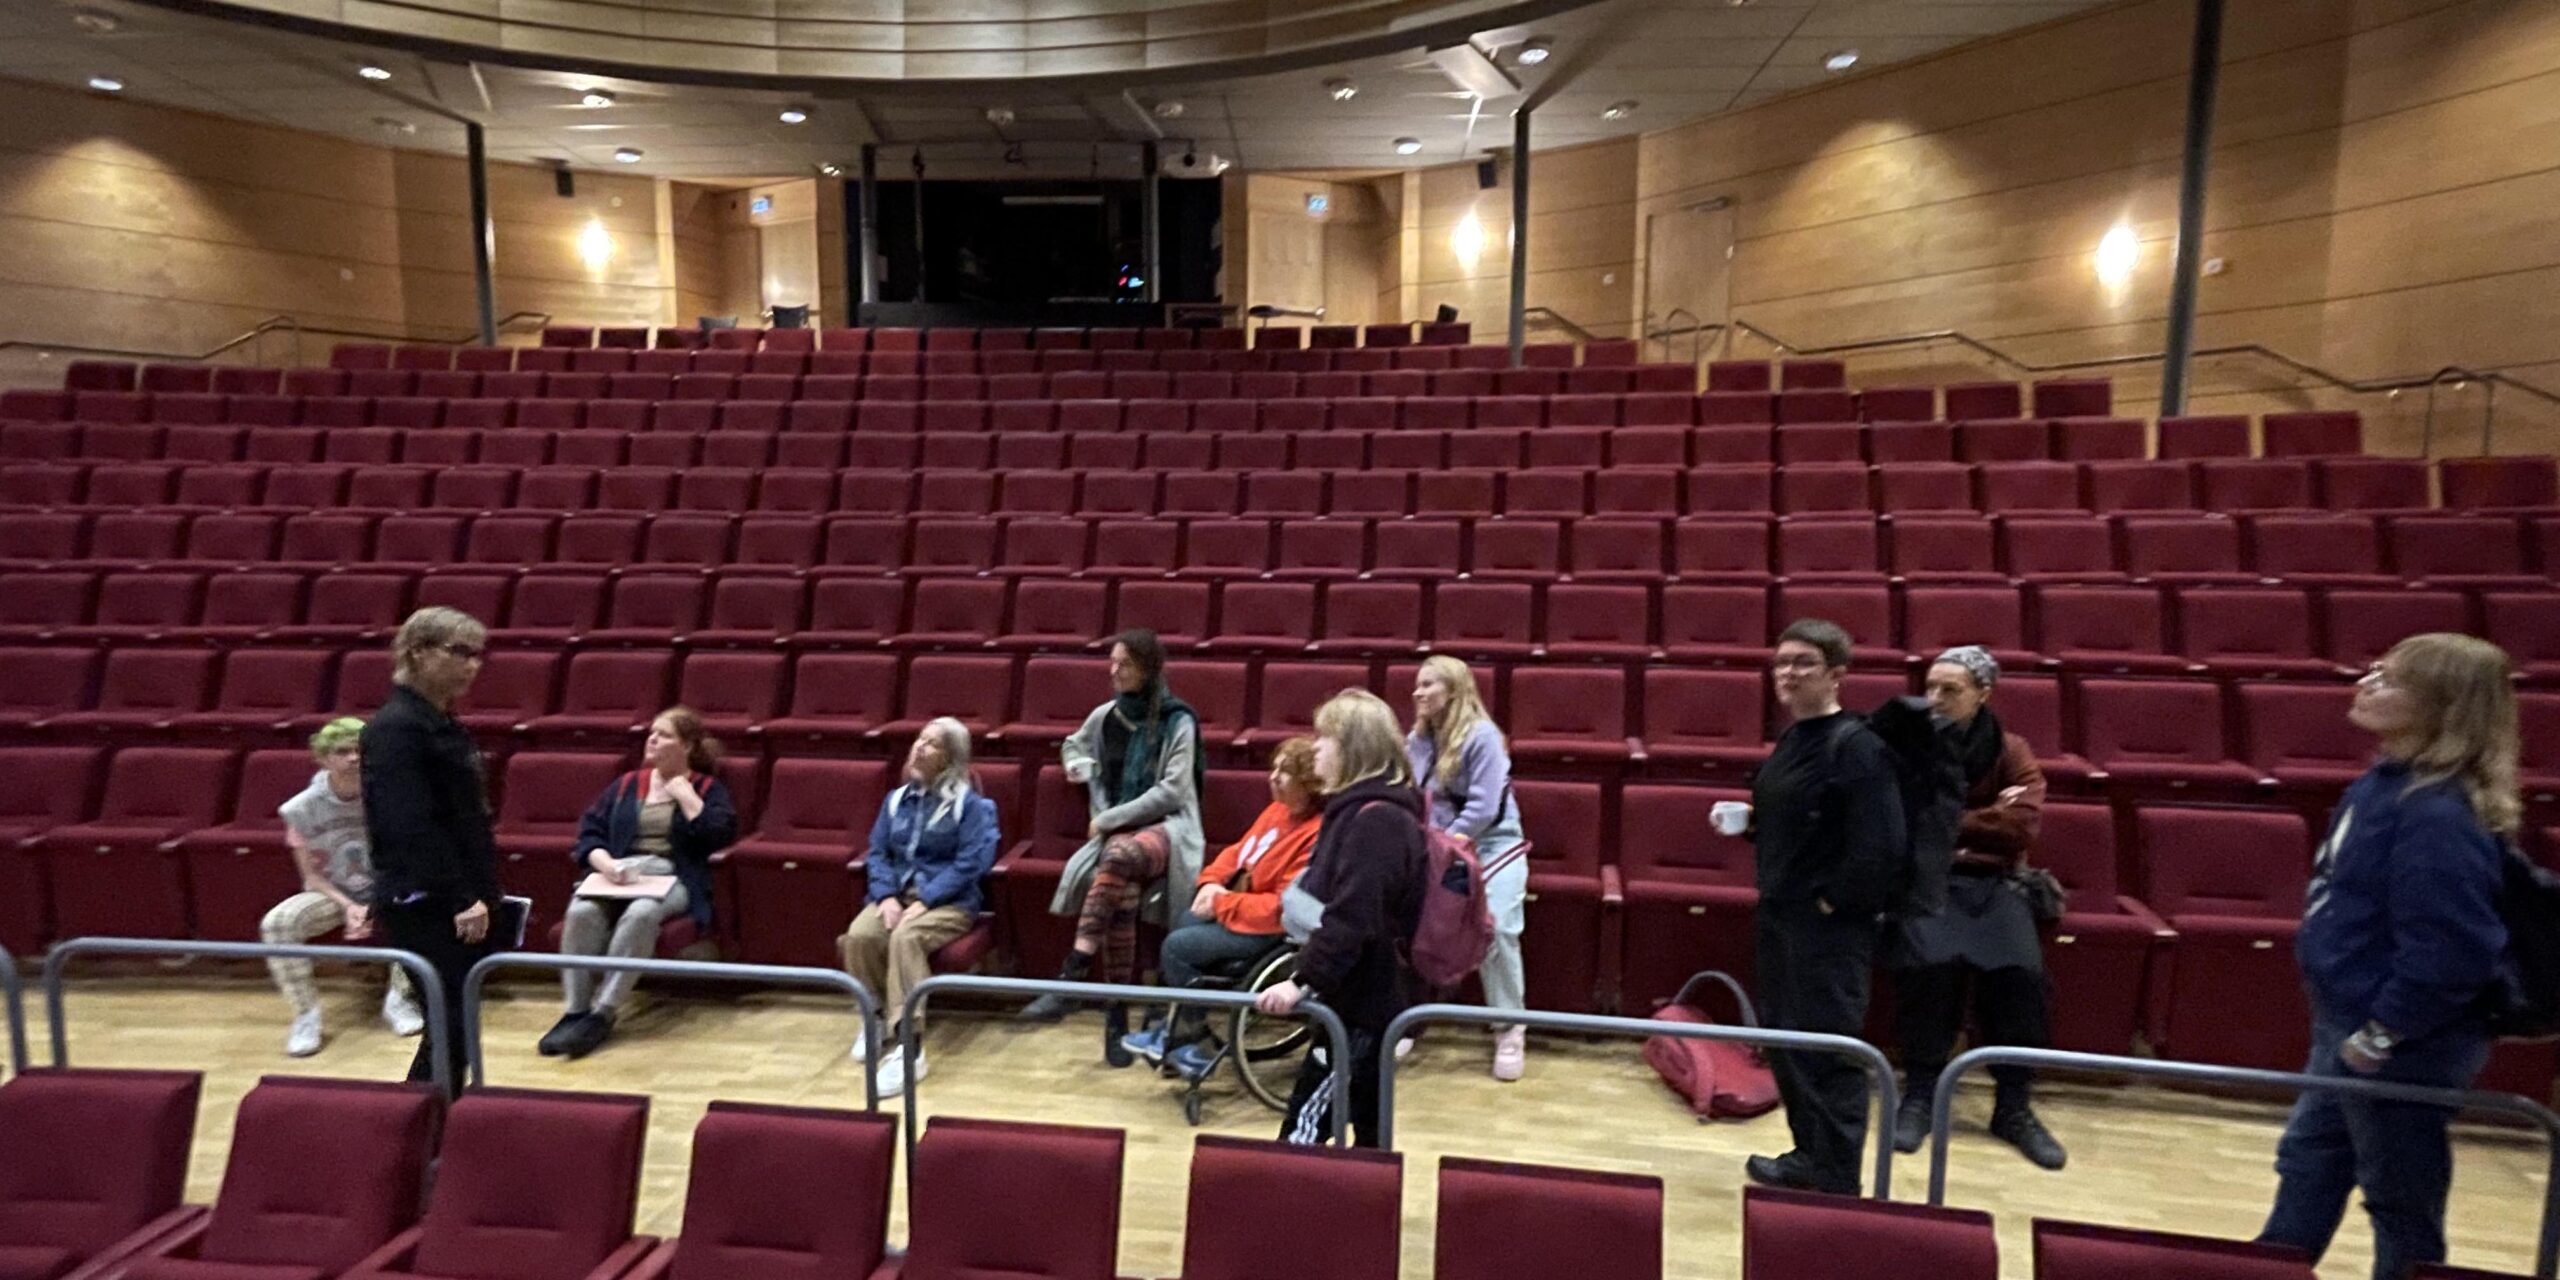 Salongen i en teater. Röda publikplatser syns i större delen av bilden. Mitt i bilden står och sitter 11 personer.lyssnades på en person som pratar.